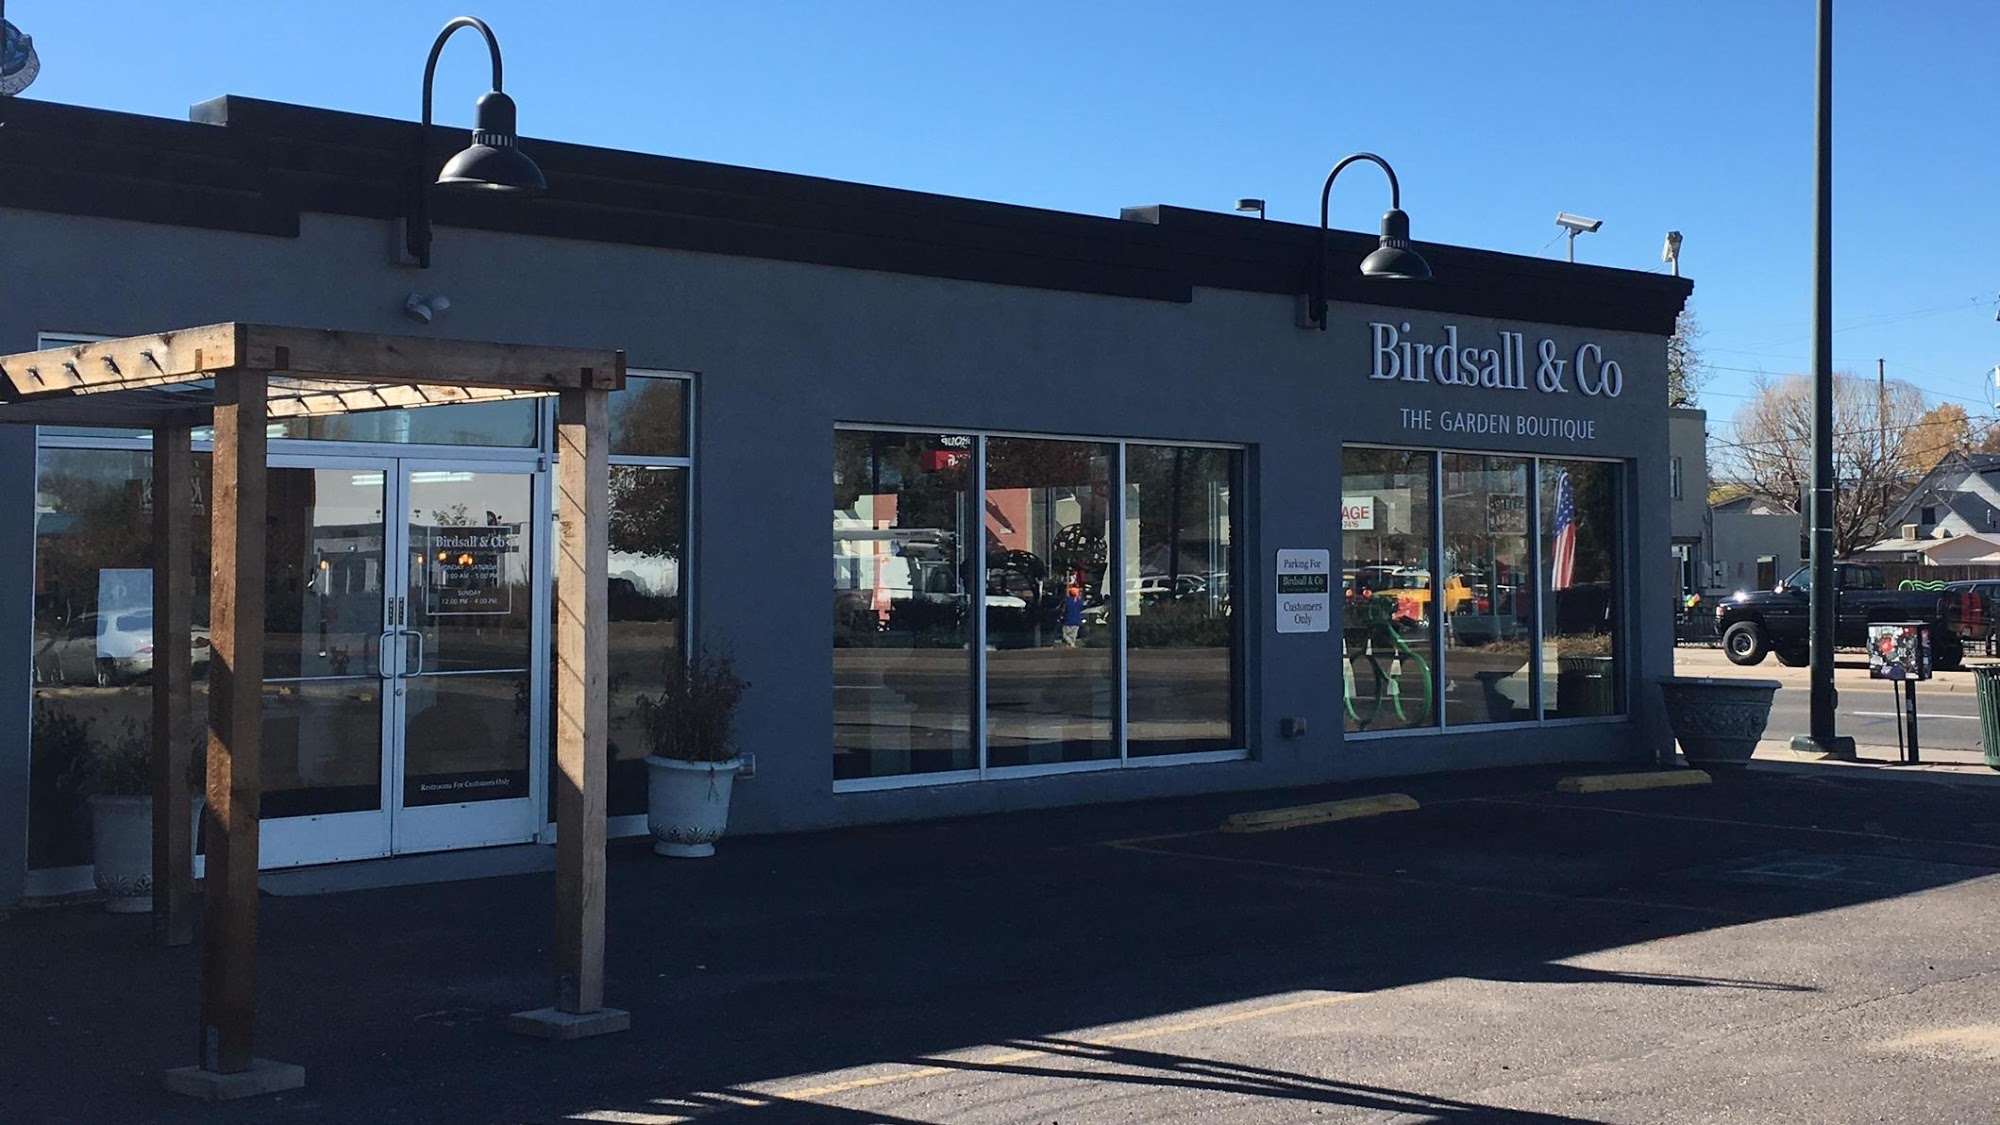 Birdsall & Co. The Garden Boutique